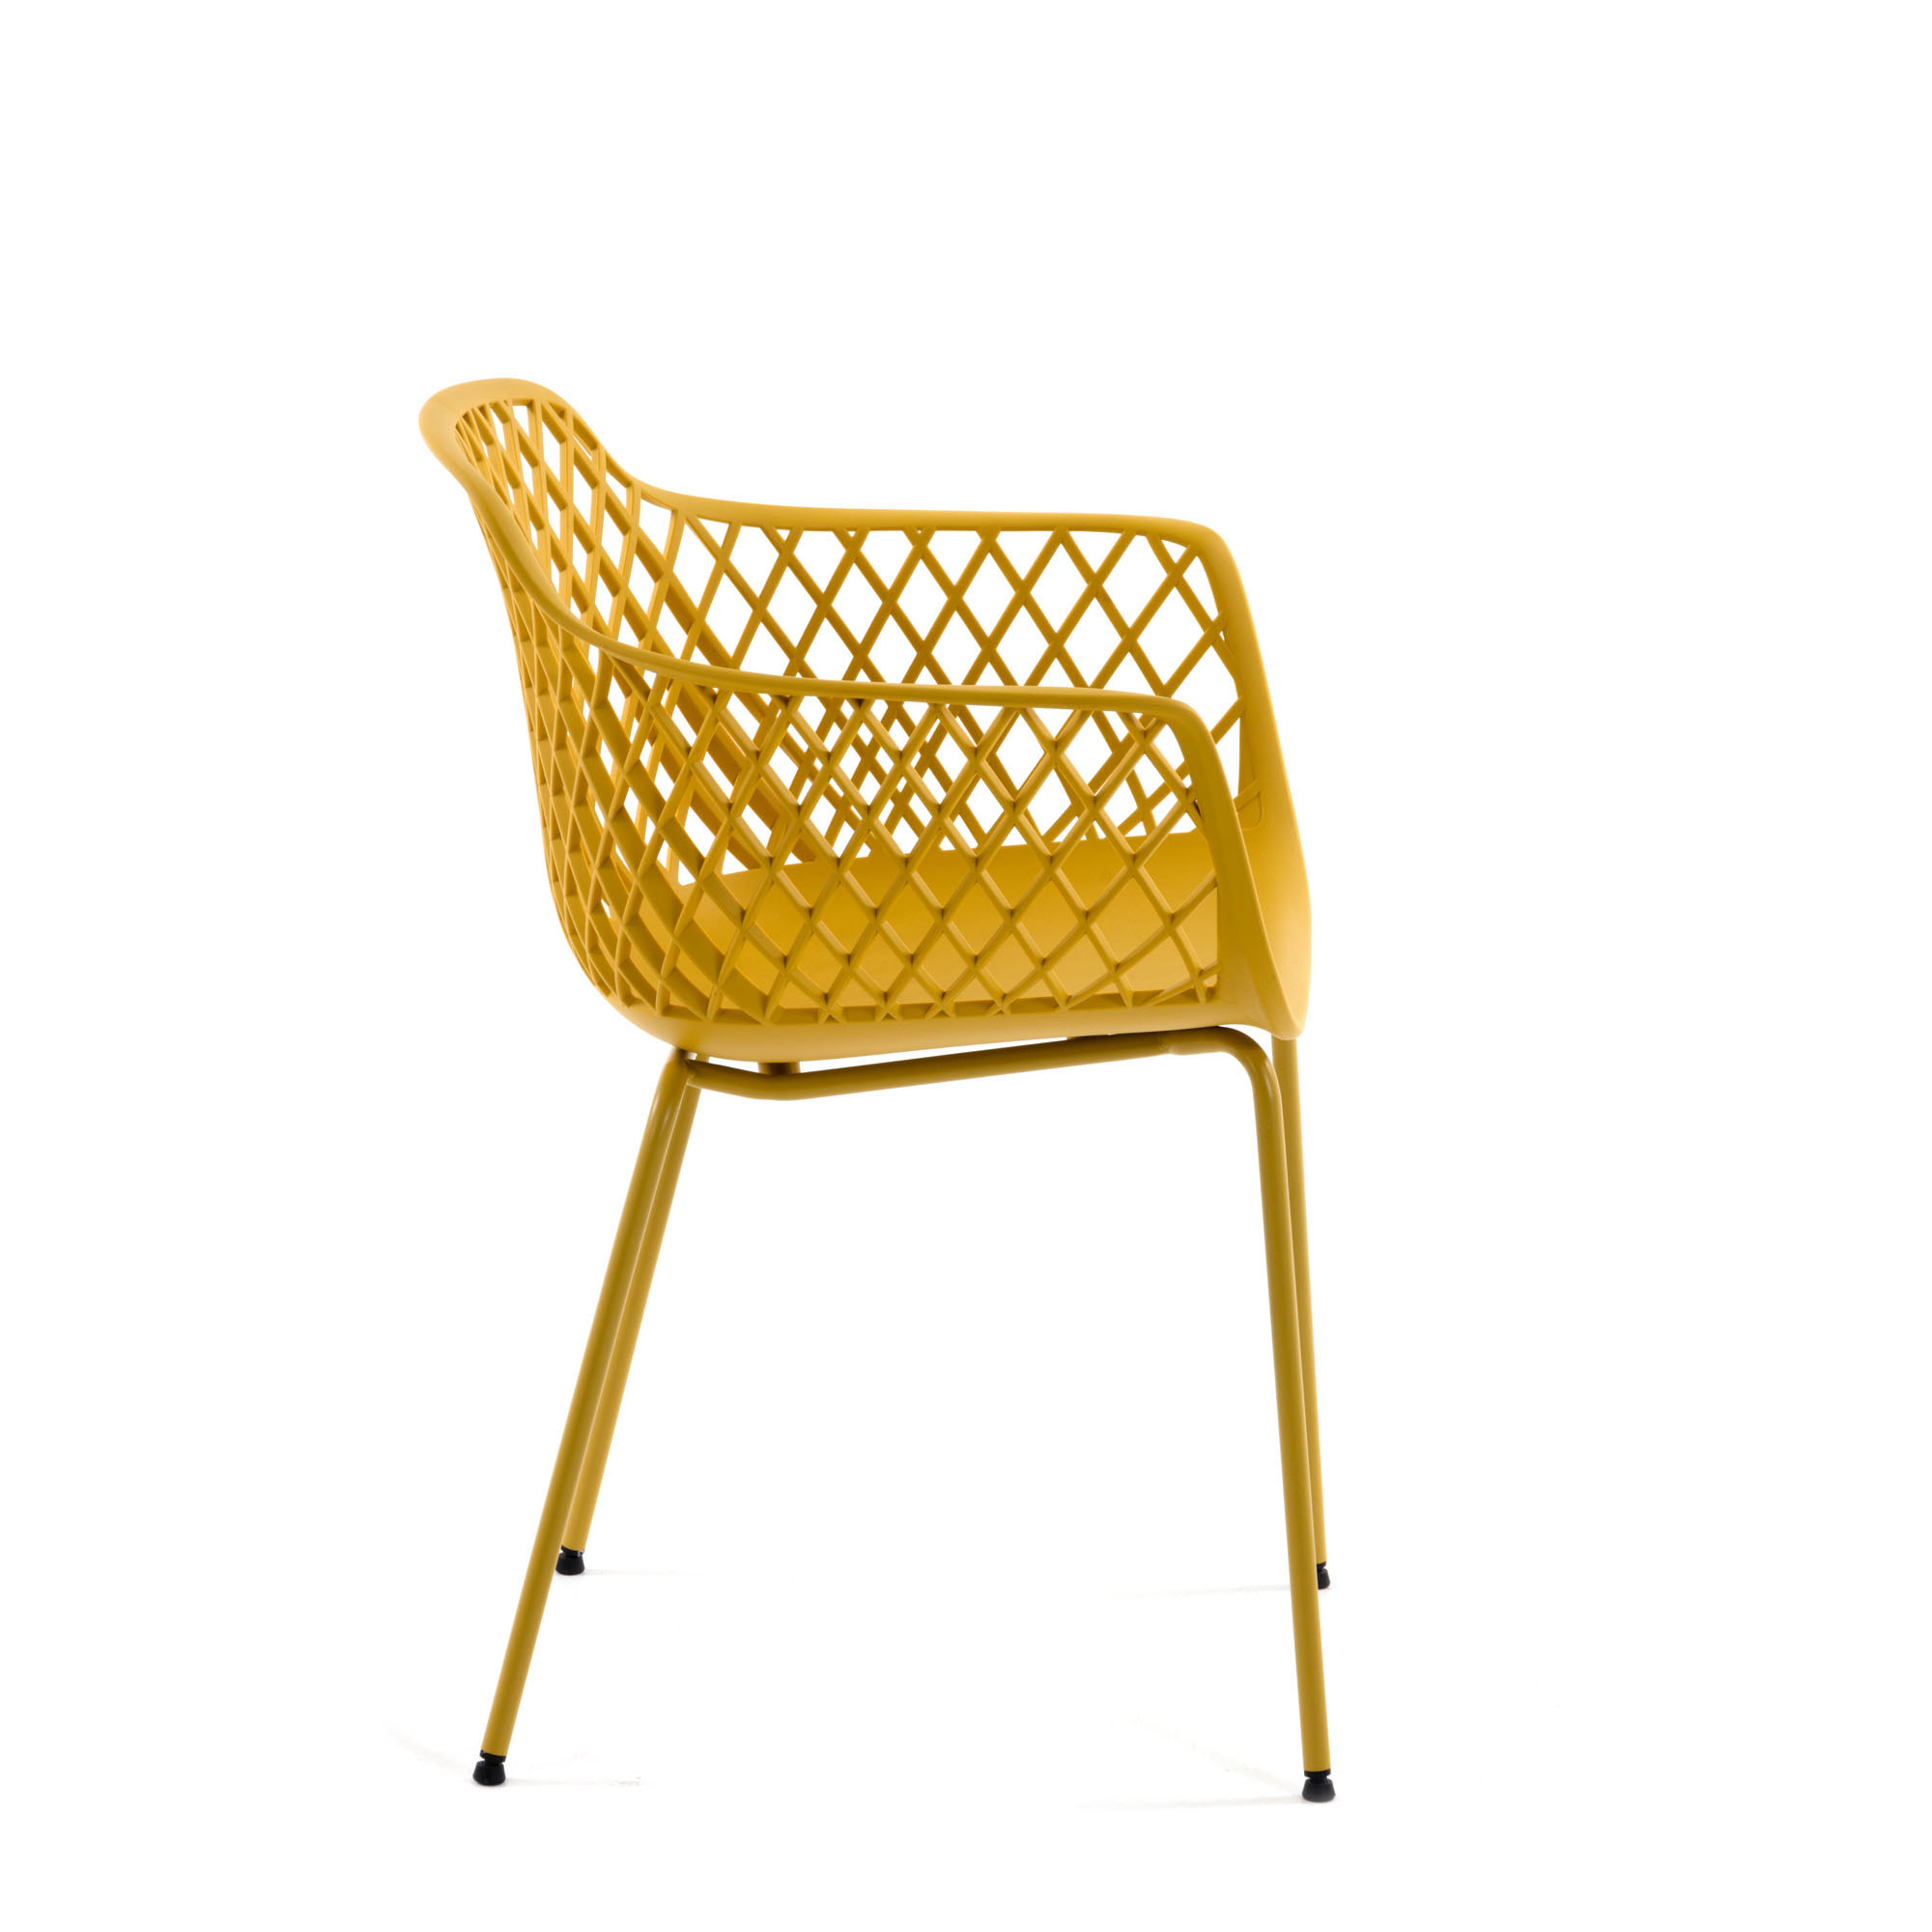 Yellow Quinn chair